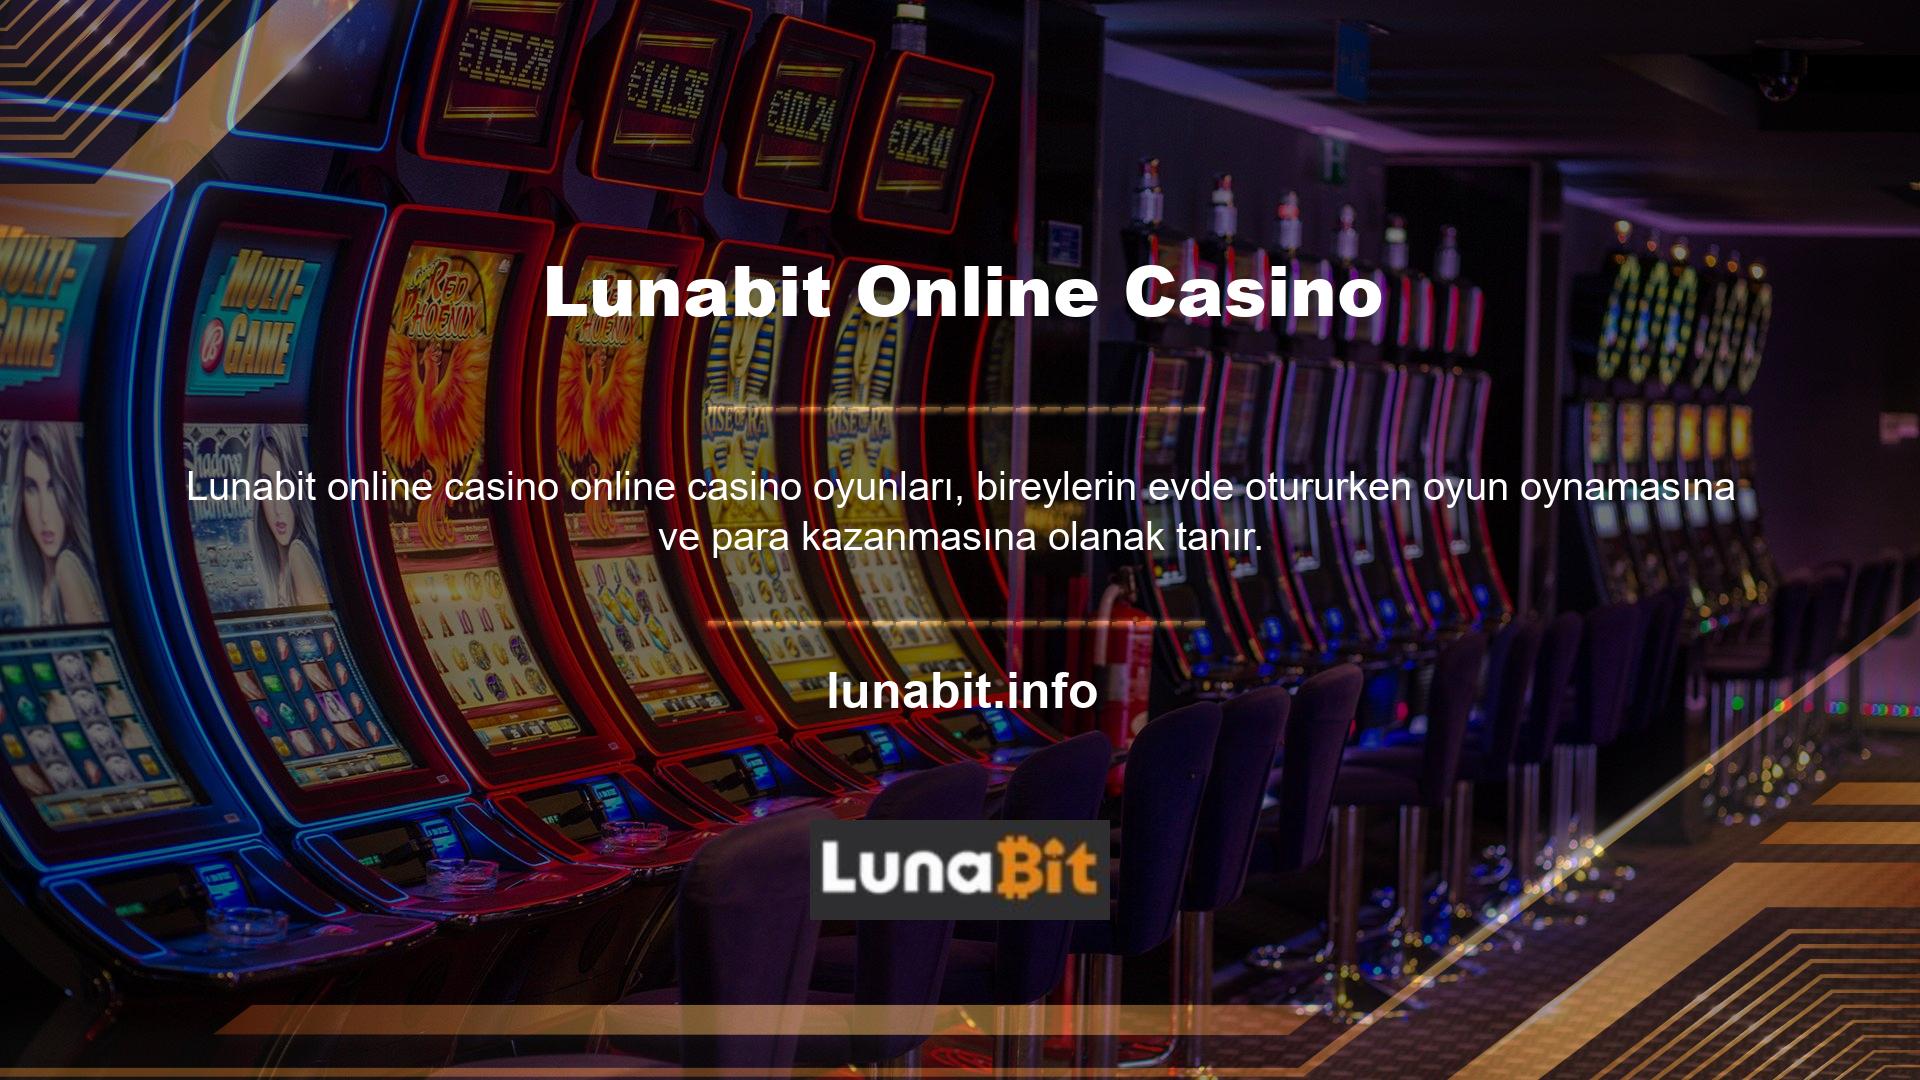 Uluslararası bir oyun sitesi olan Lunabit sitesi, üyelik hesabı olan herkese geniş bir oyun yelpazesi sunmaktadır